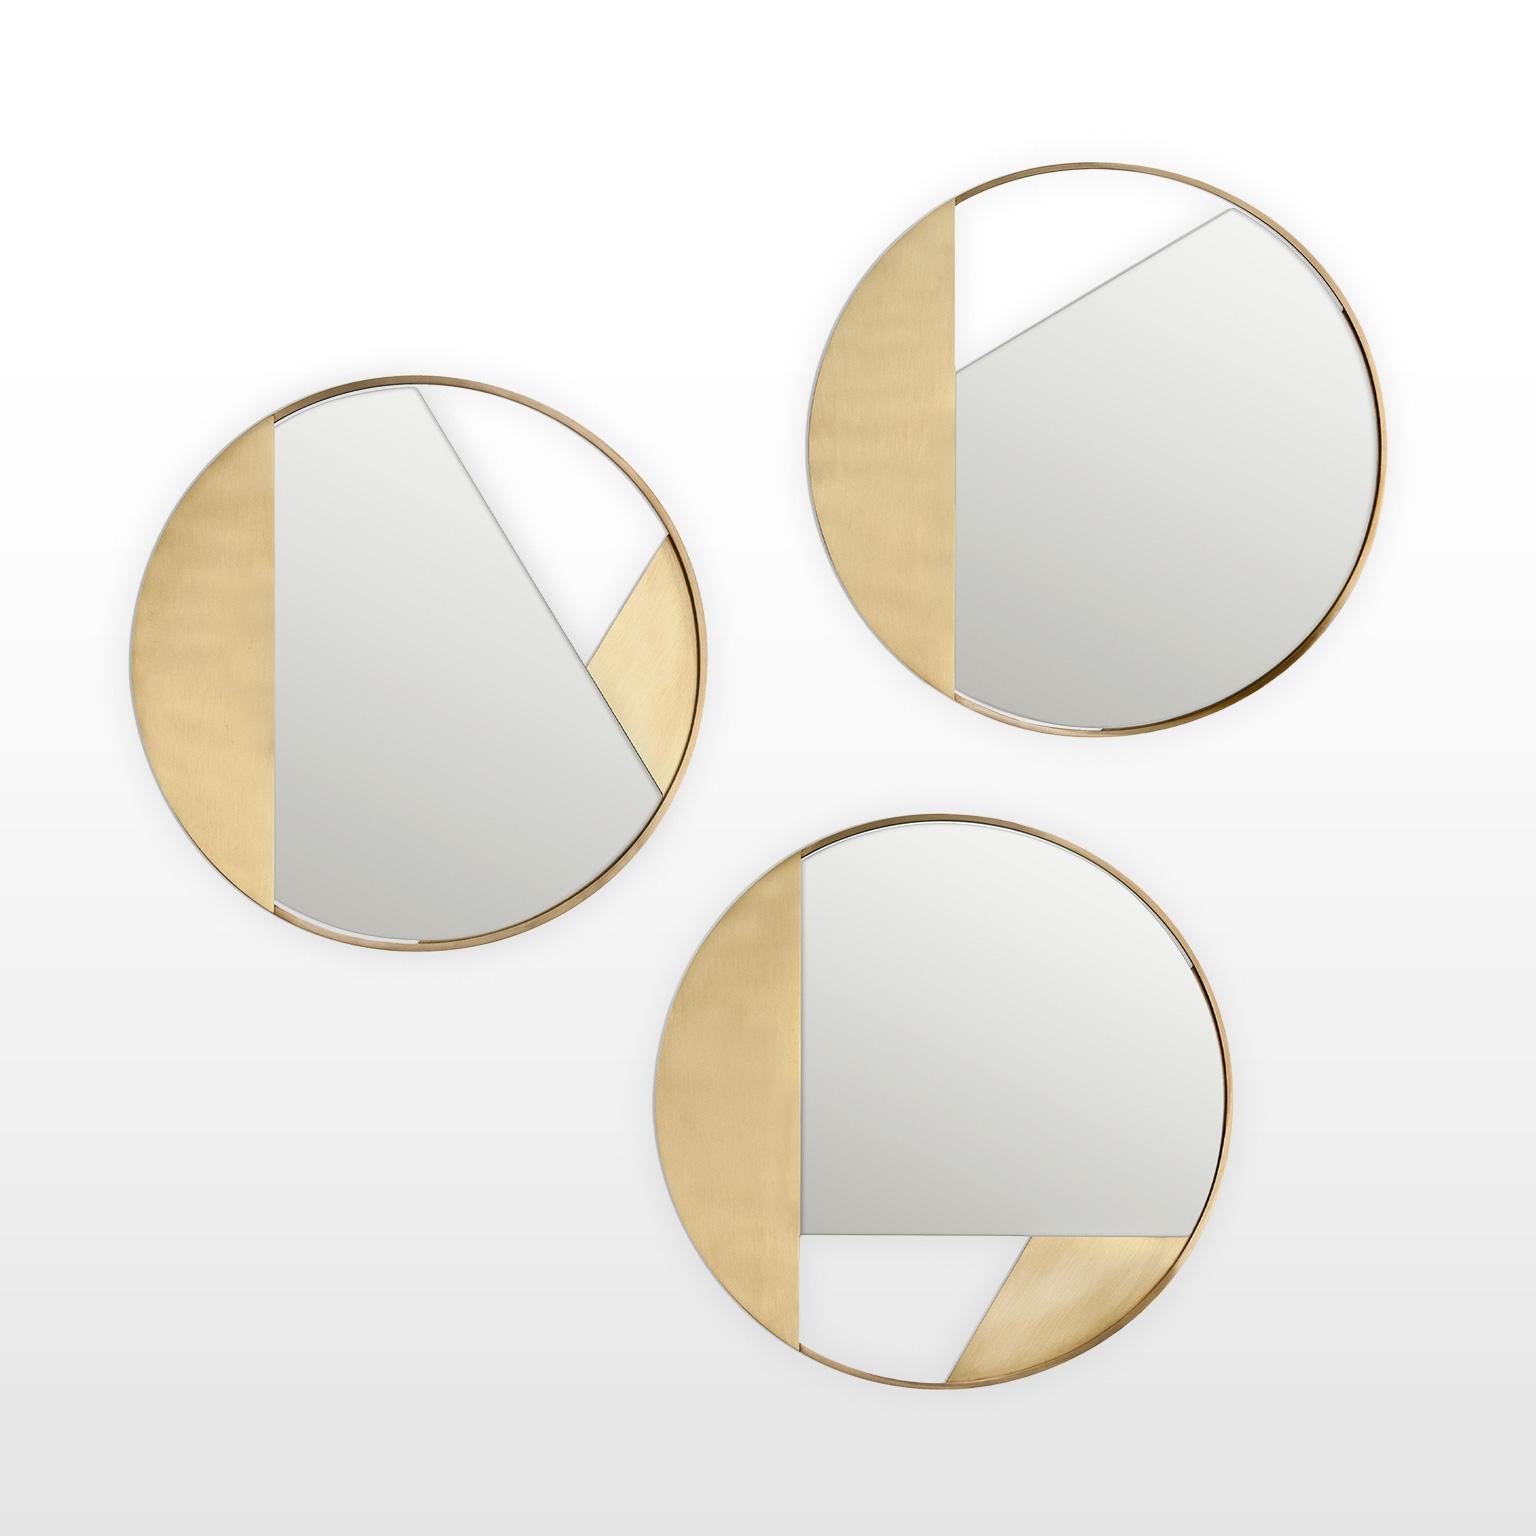 Contemporary Limited Edition Brass Mirror, Revolution 55 V2 by Edizione Limitata For Sale 3